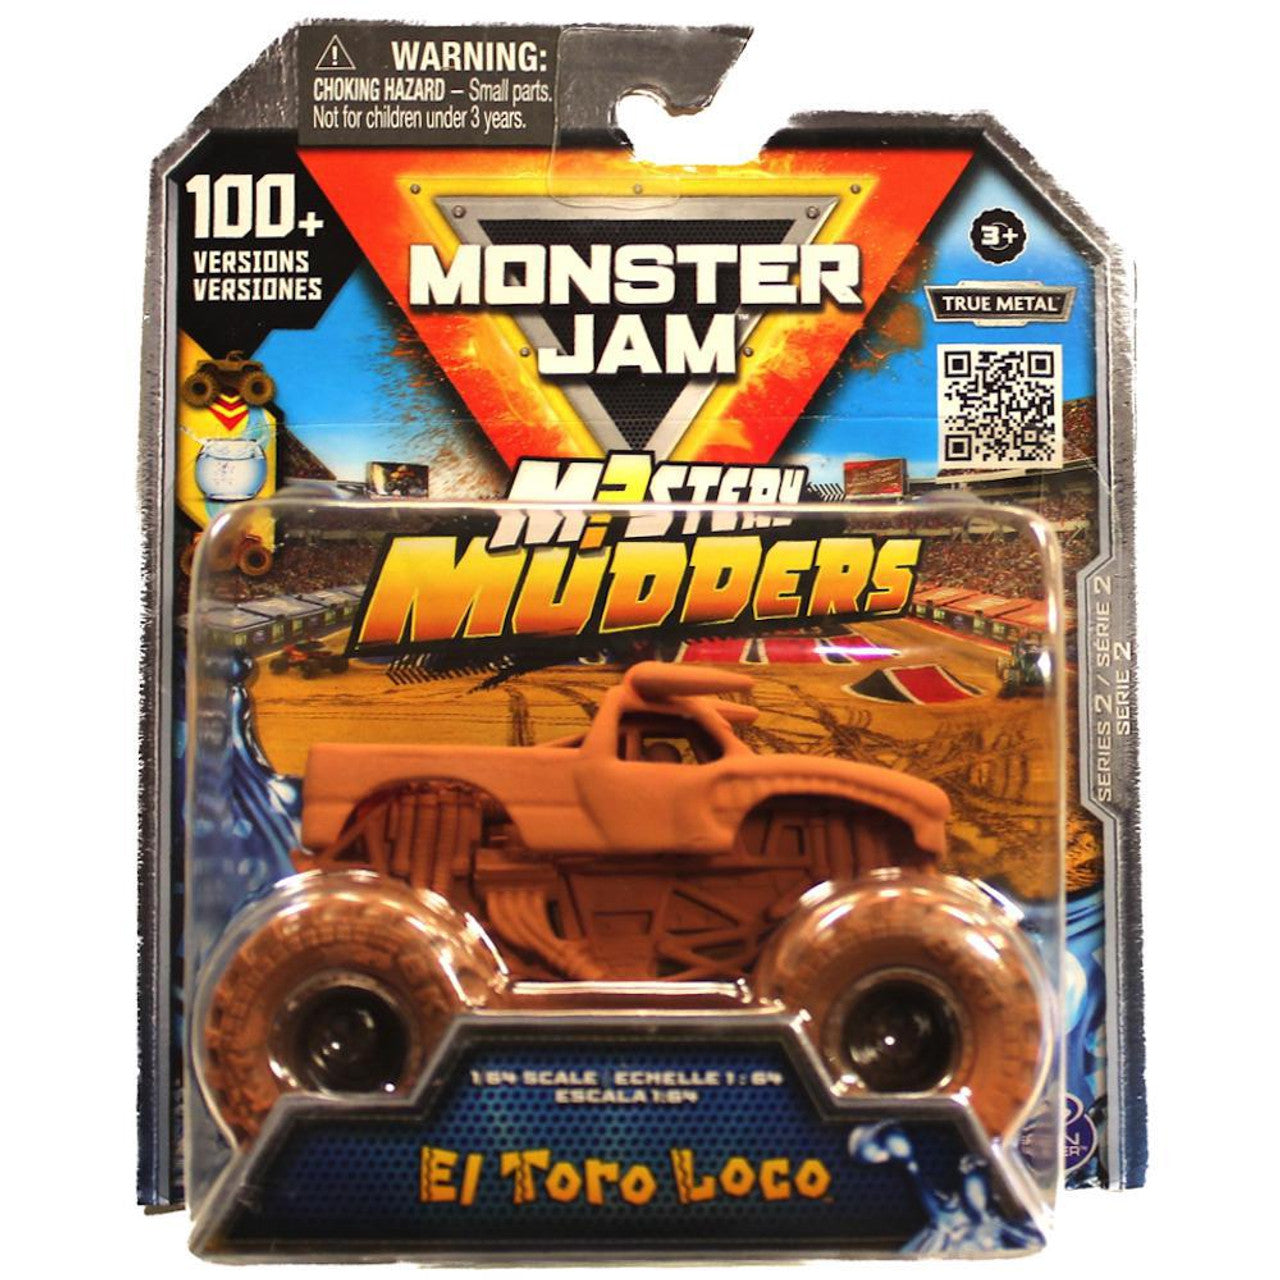 El Toro Loco  Monster jam, Monster pictures, Monster trucks